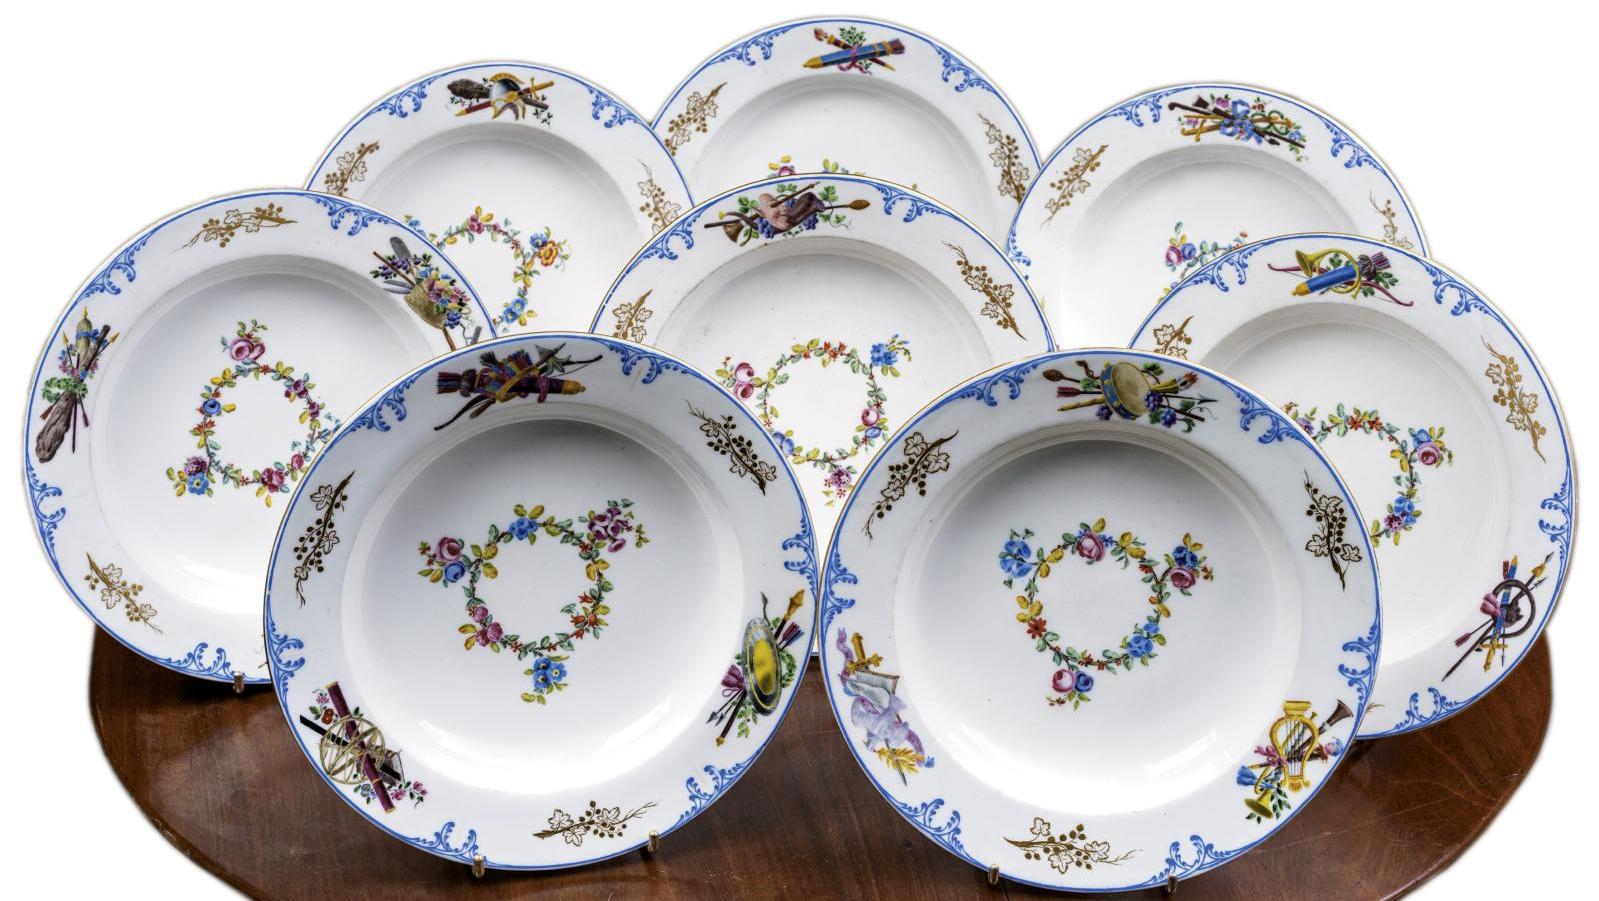 XVIIIe siècle, manufacture de Sèvres. Ensemble de huit assiettes à potage en porcelaine... Retour à Versailles pour un service de Louis XV